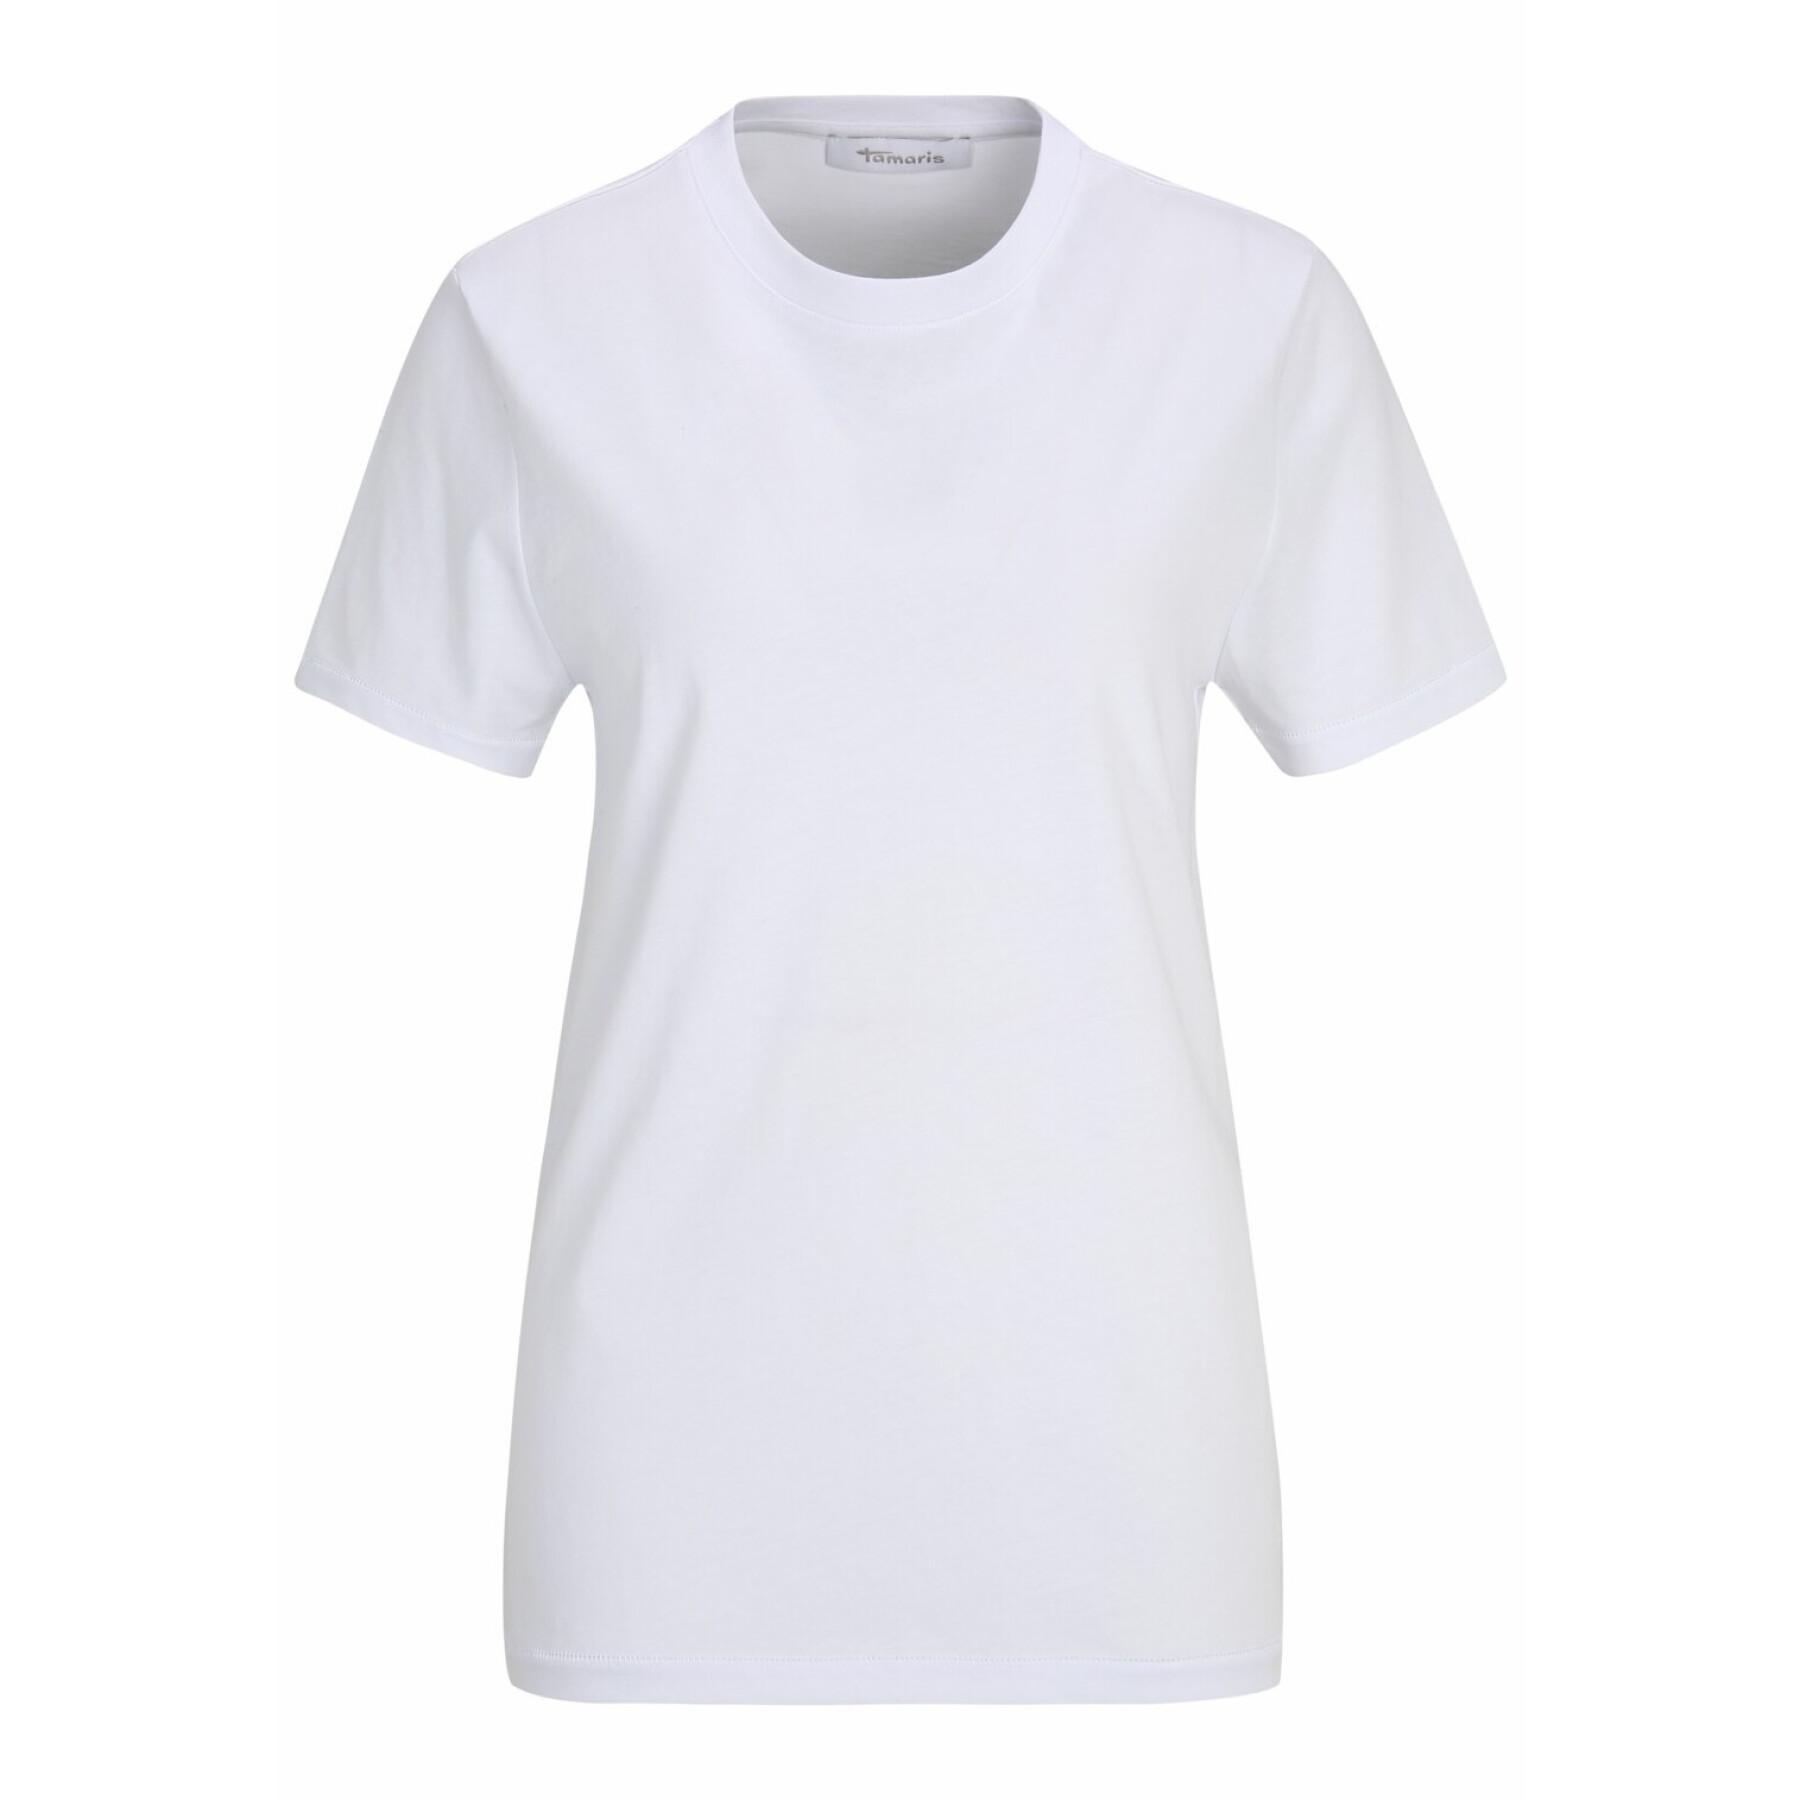 Tamaris - T-shirt - T-shirts Plain women T-shirts tank for Adria and Clothing Women\'s - tops